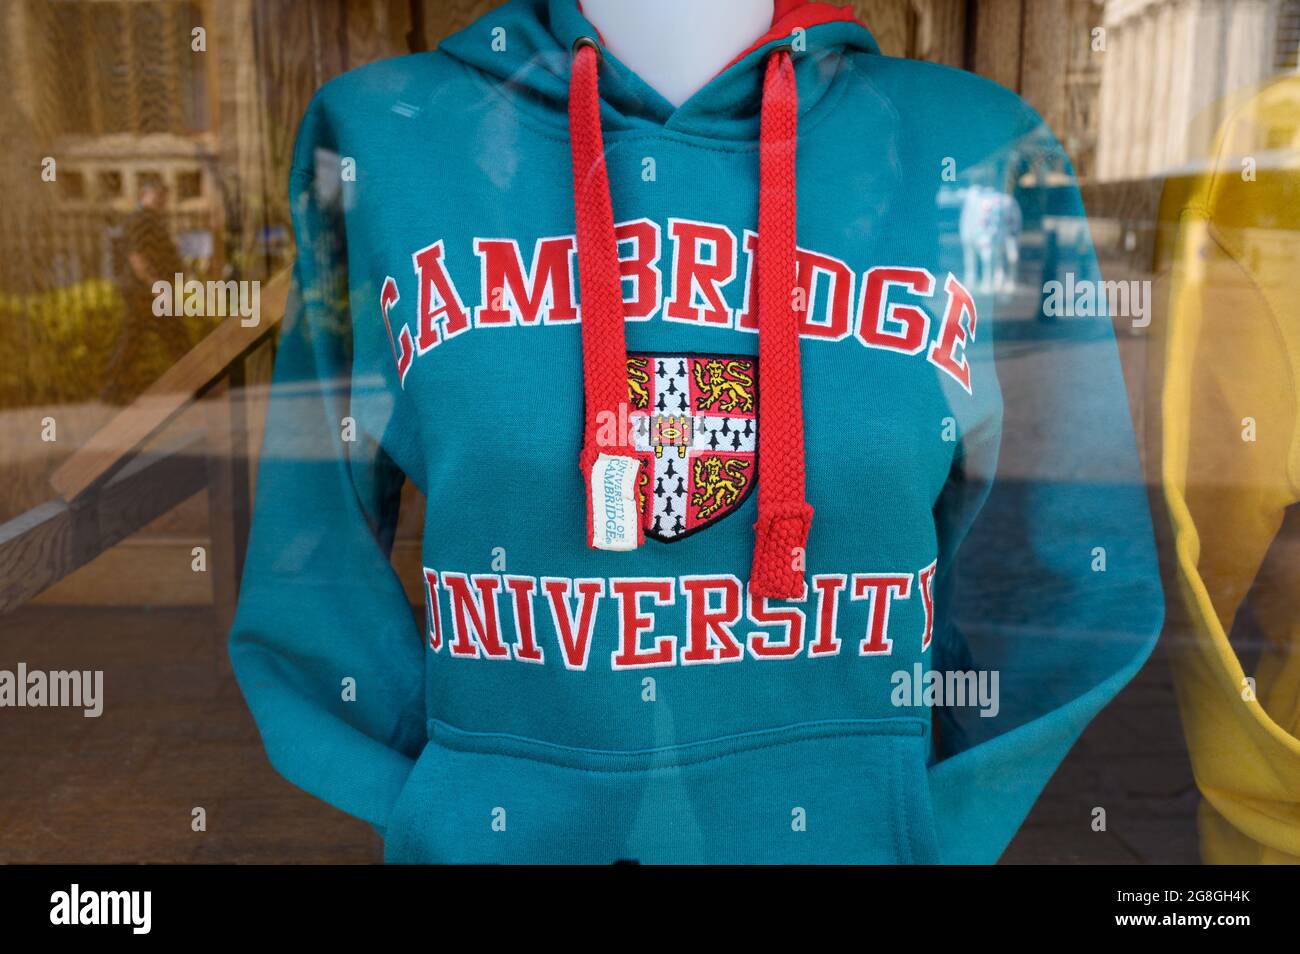 Kleidung der University of Cambridge wird in einem Schaufenster ausgestellt. Stockfoto